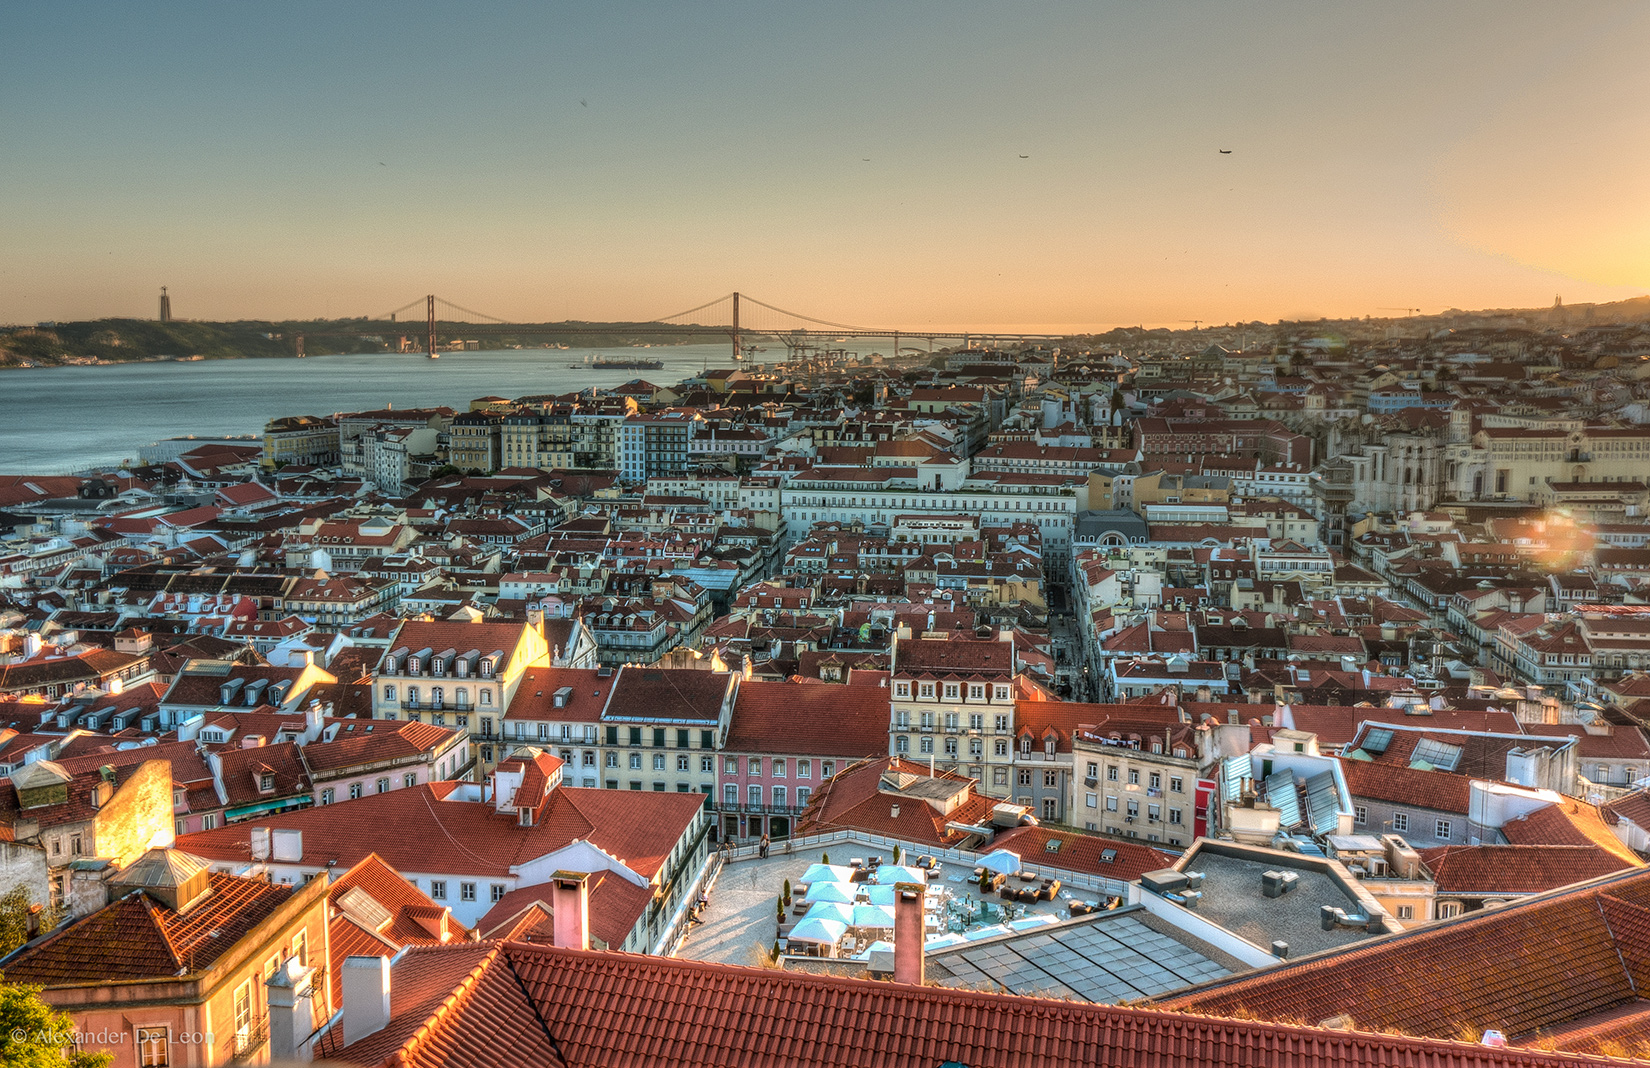 Second Home Lisboa